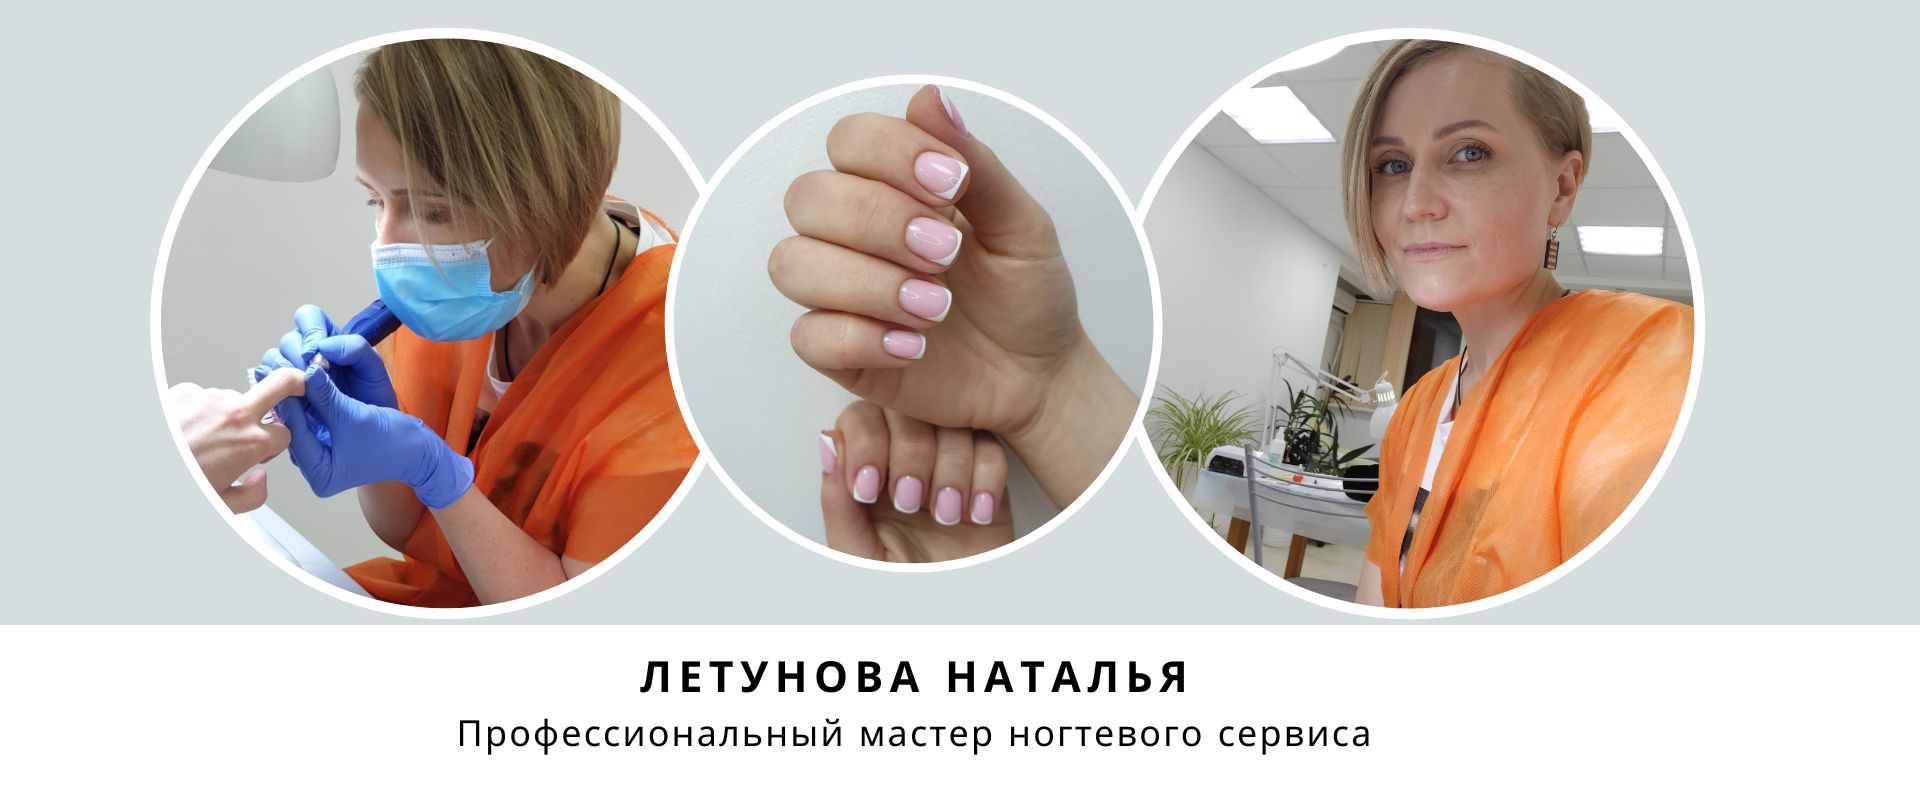 Сайт мастера ногтевого сервиса Натальи Летуновой г. Краснодар